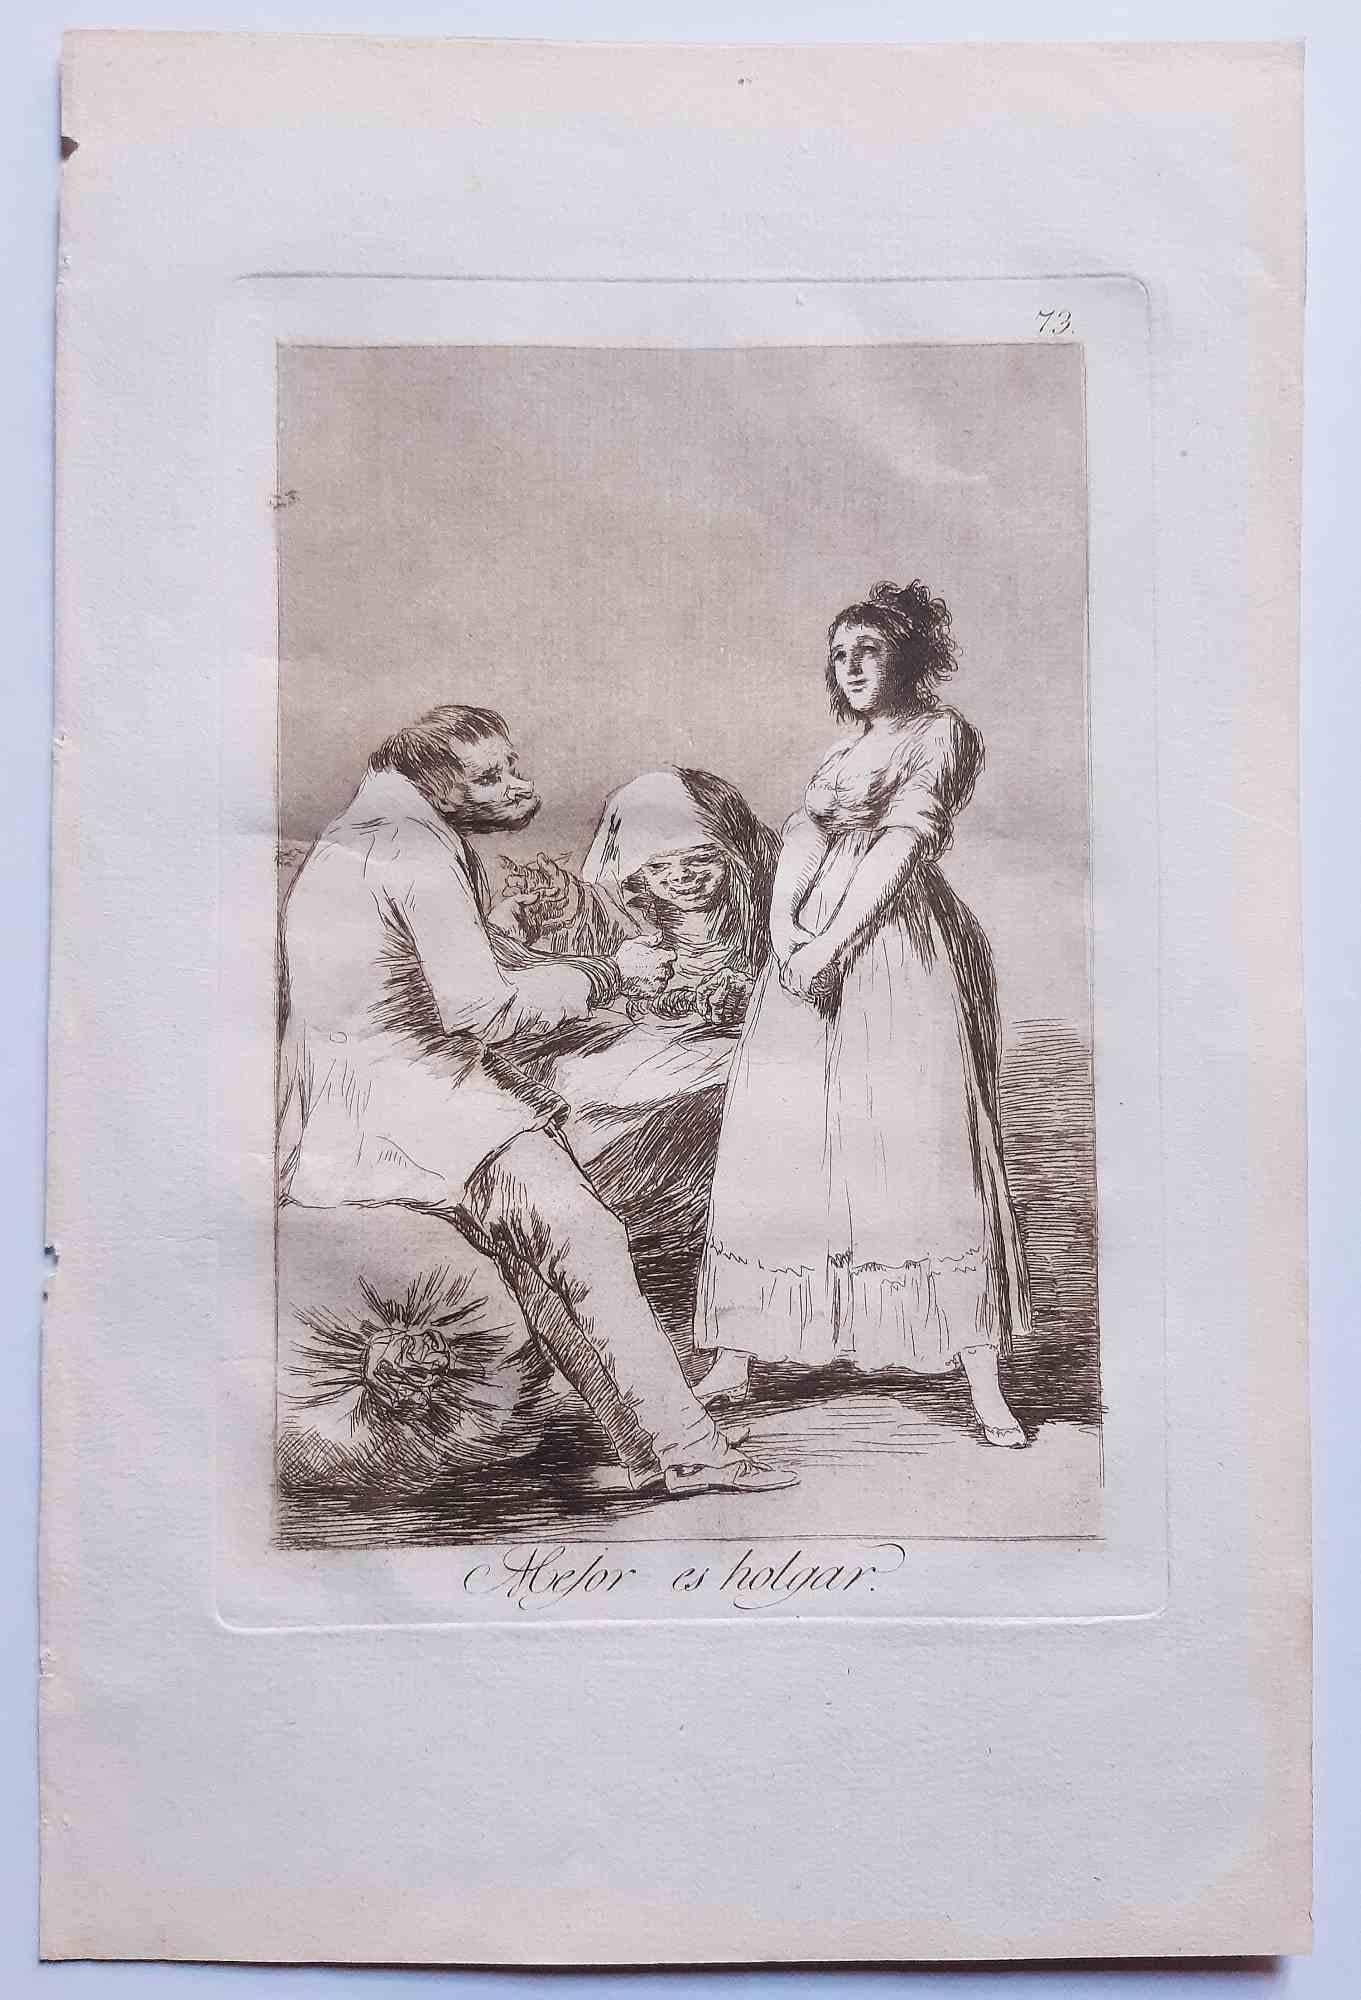 Mejor es holgar de Los Caprichos est un original.  œuvre d'art réalisée par l'artiste Francisco Goya et publiée pour la première fois en 1799.

Eau-forte et aquatinte sur papier.

Cette gravure fait partie de la première édition de "Los Caprichos"